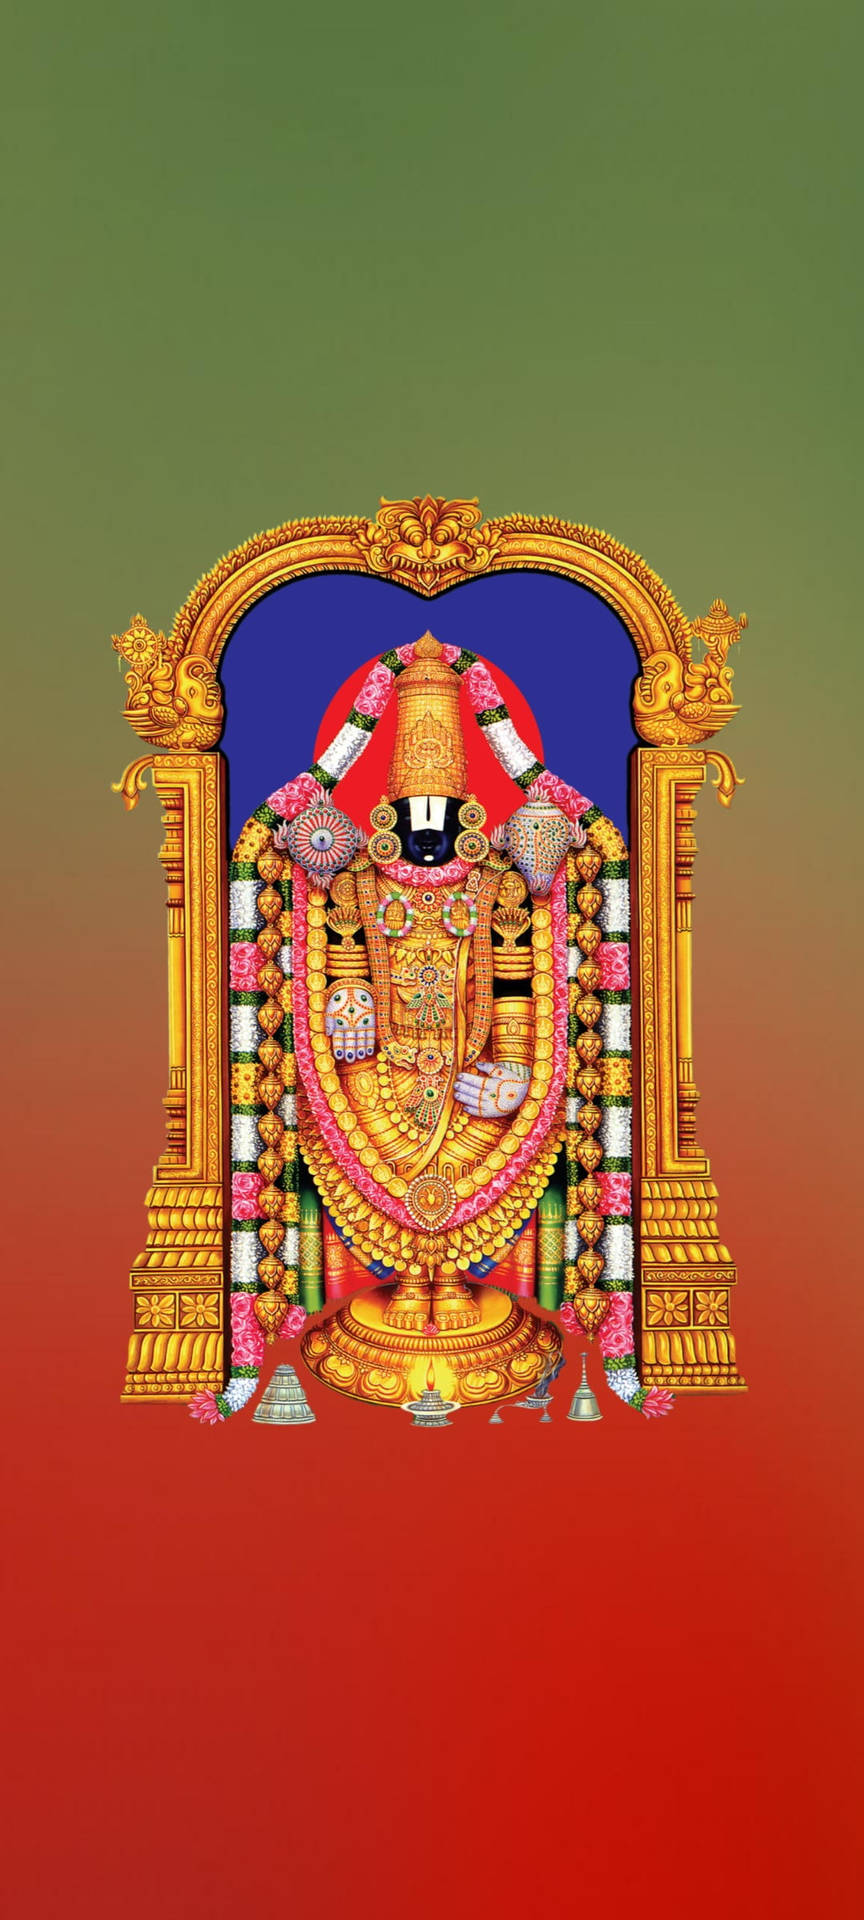 Tirupatibalaji En Degradado Verde Rojo. Fondo de pantalla